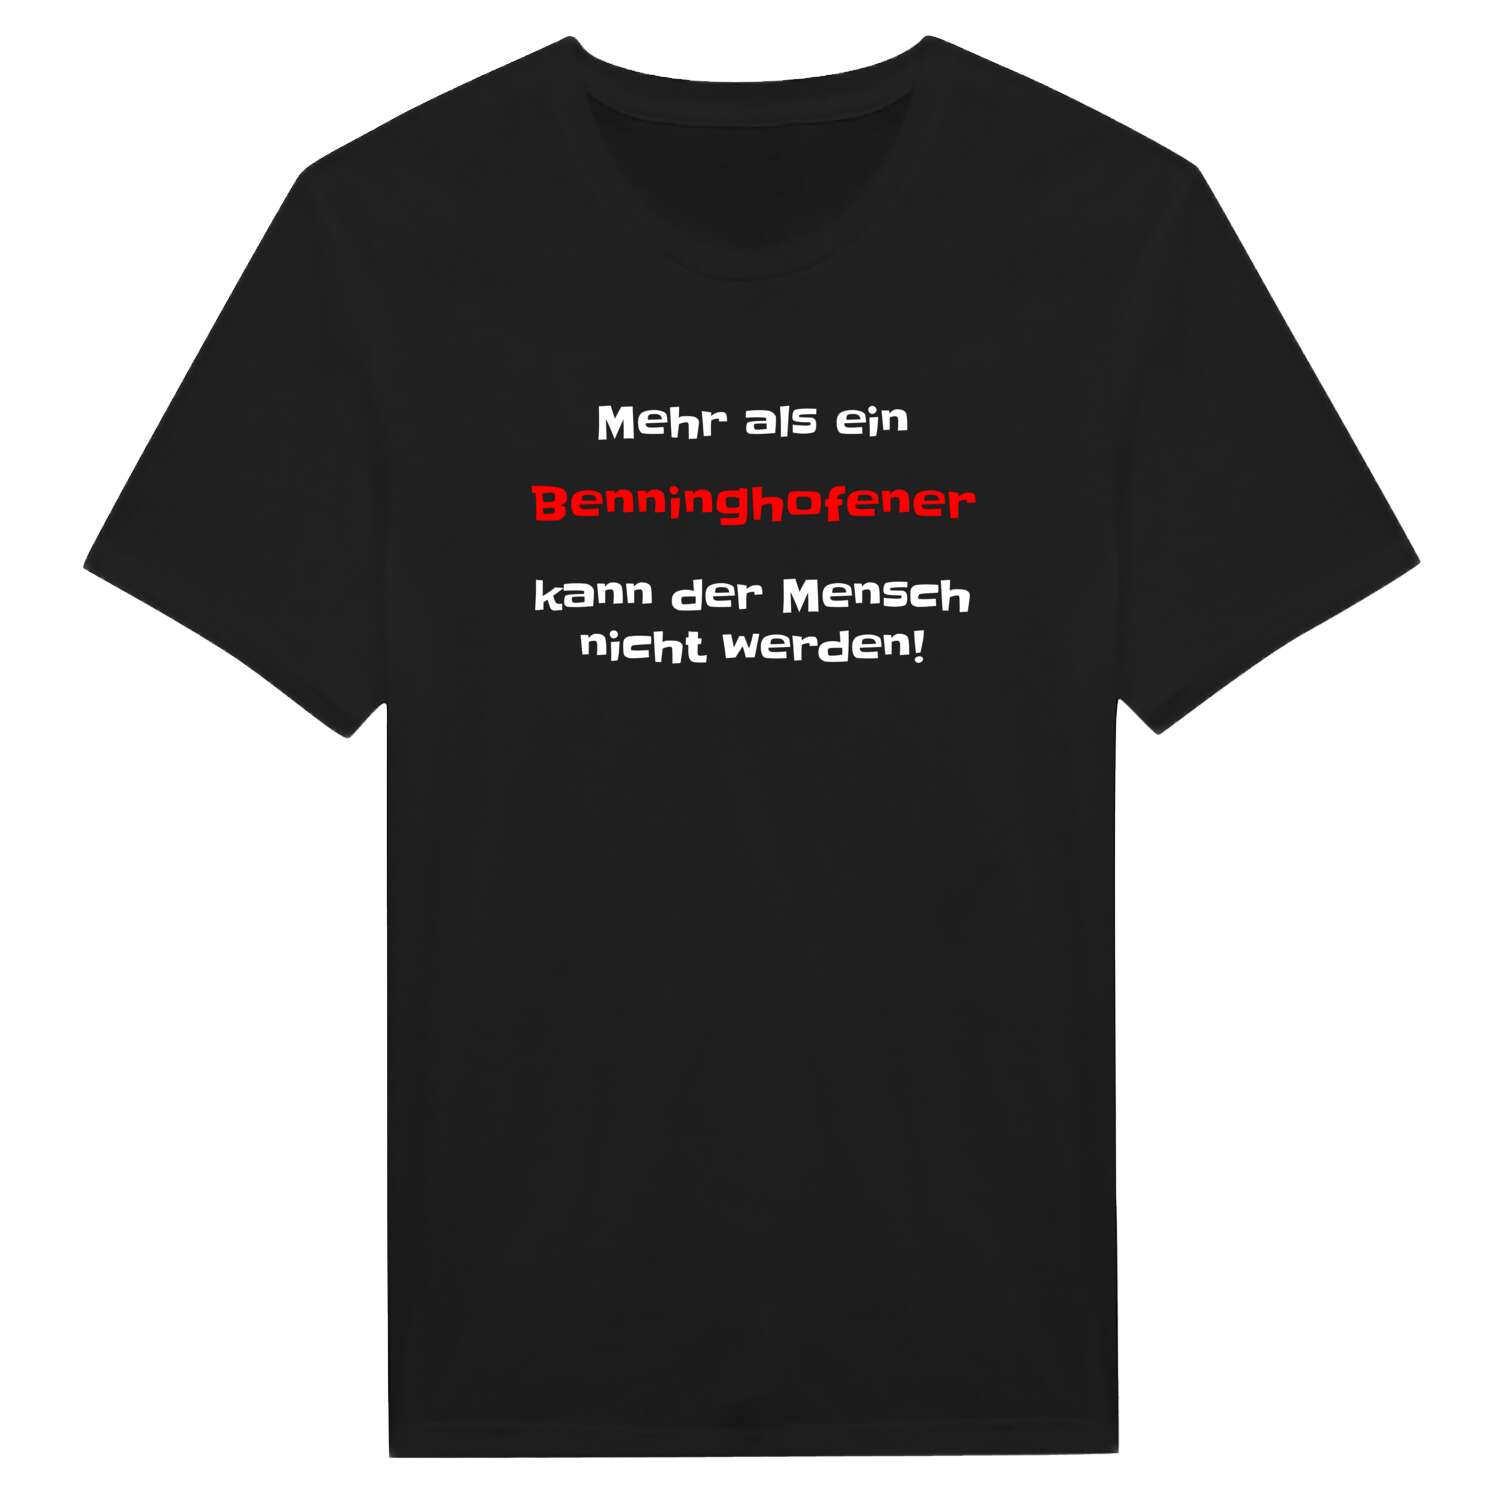 Benninghofen T-Shirt »Mehr als ein«